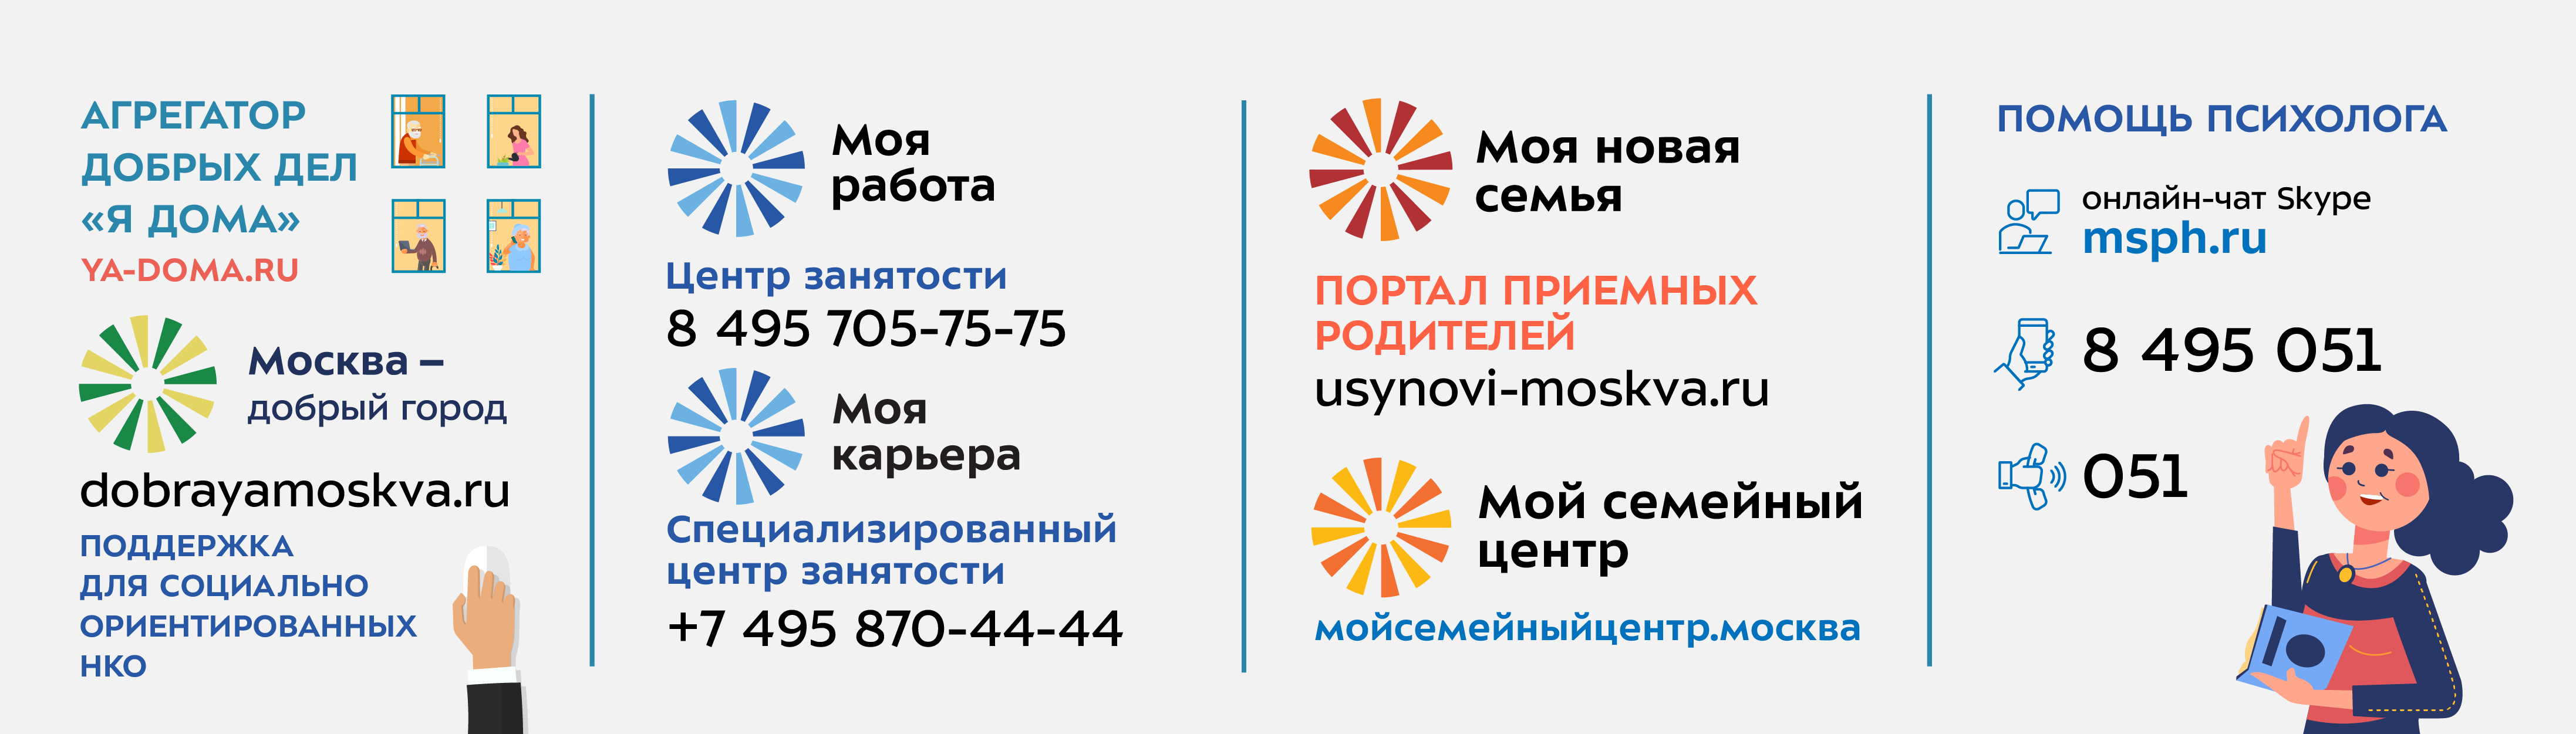 Новые вакансии Центра занятости (биржи труда) г. Иваново и Ивановской области на 09 февраля 2023 г